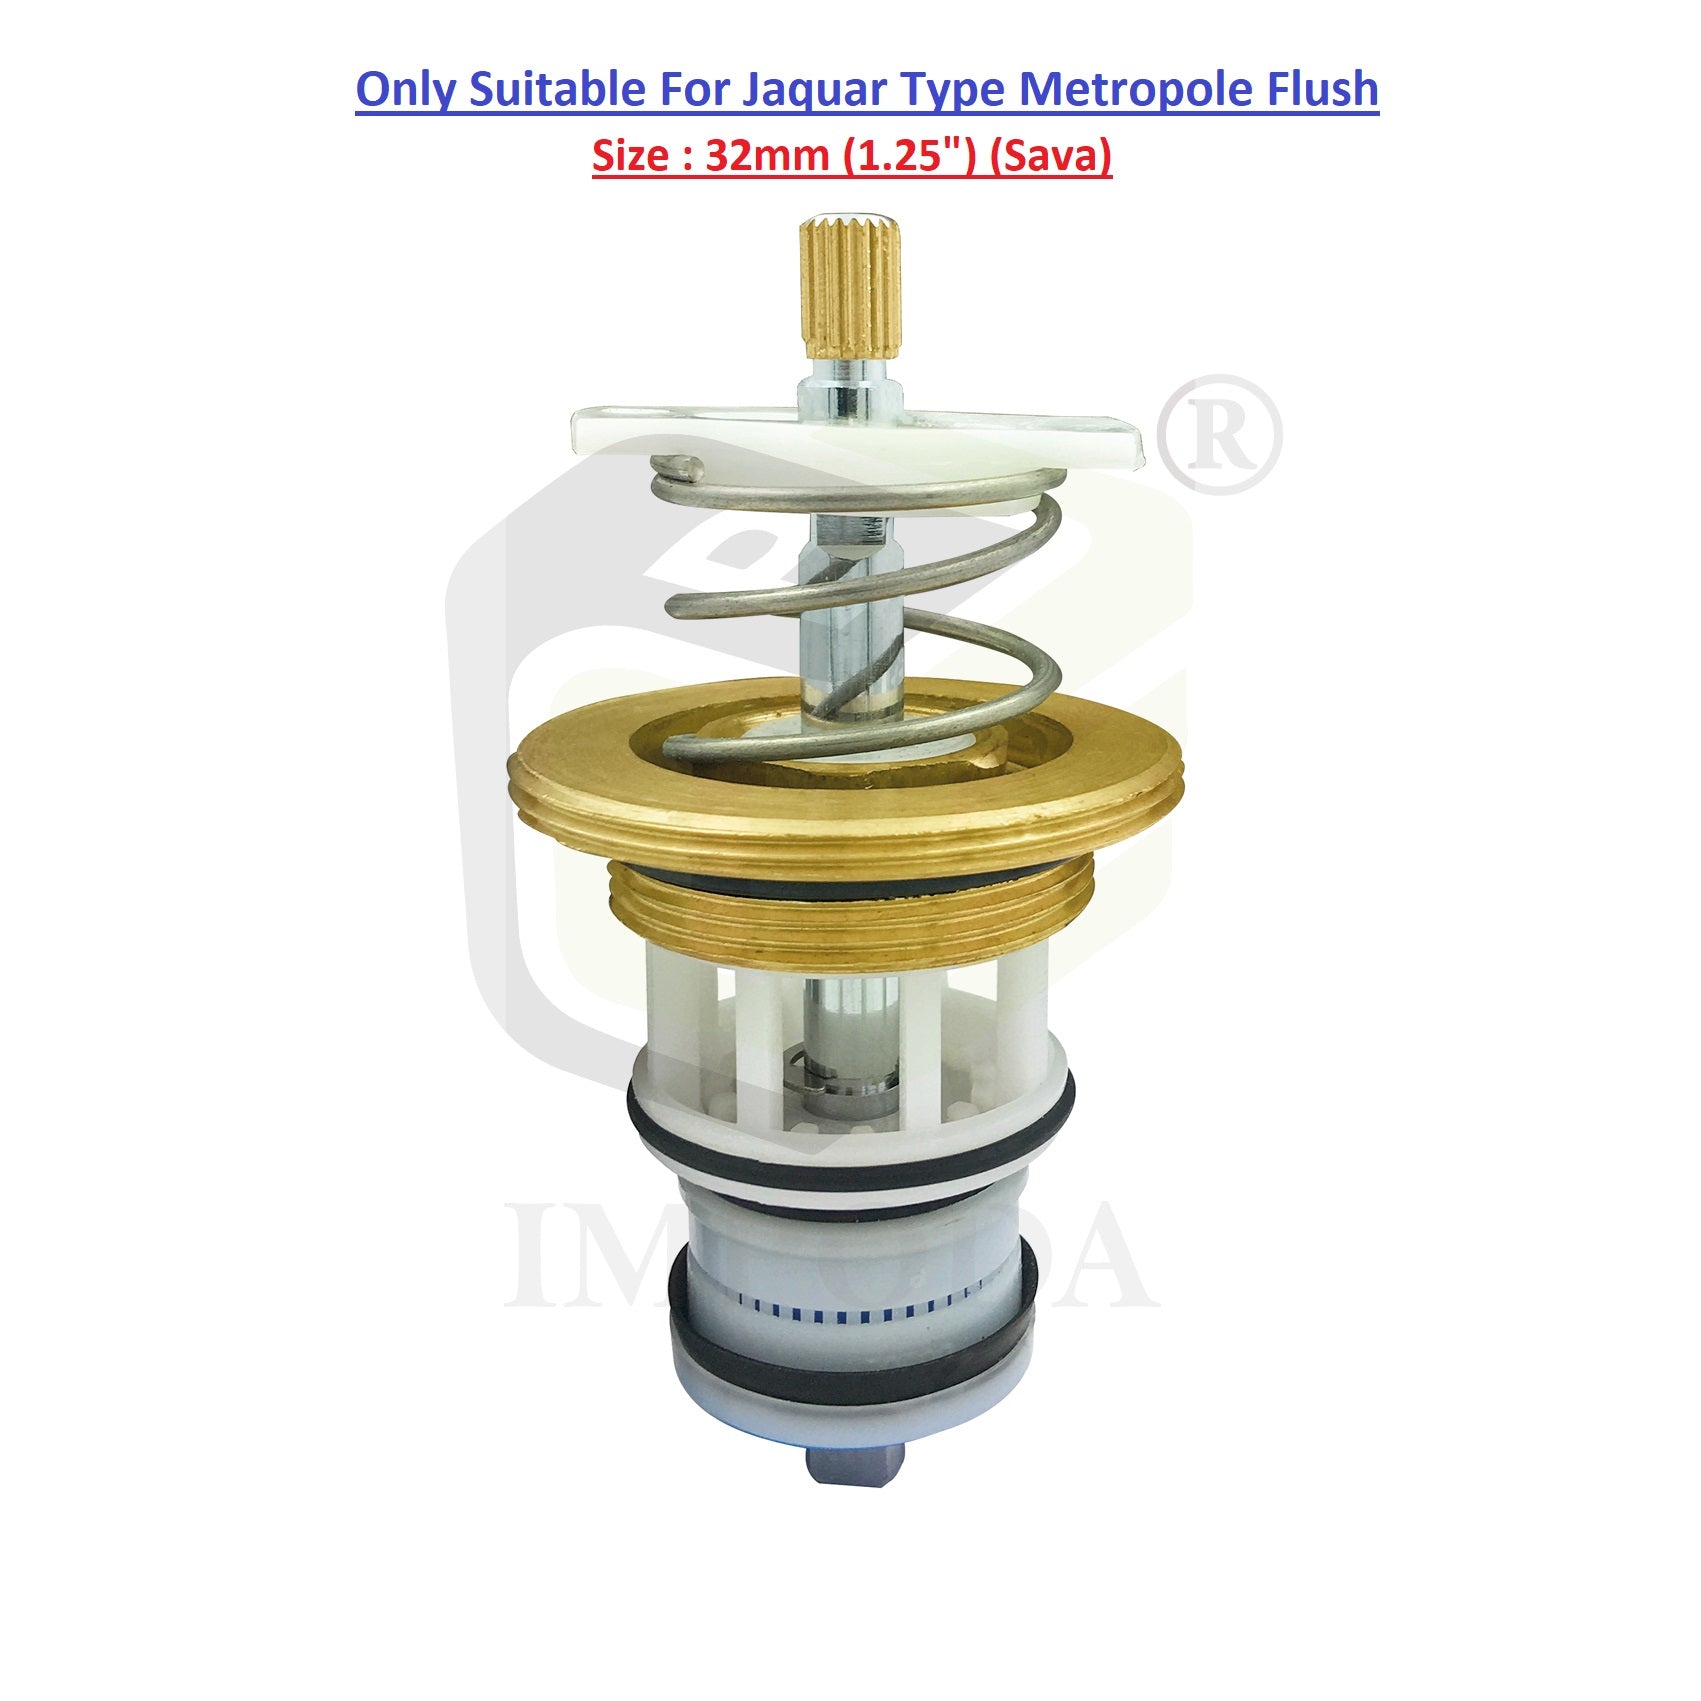 32mm (1.25") Jaquar Type Metropole Flush Valve Kit | Piston Set / IMP-J-32mm-1028